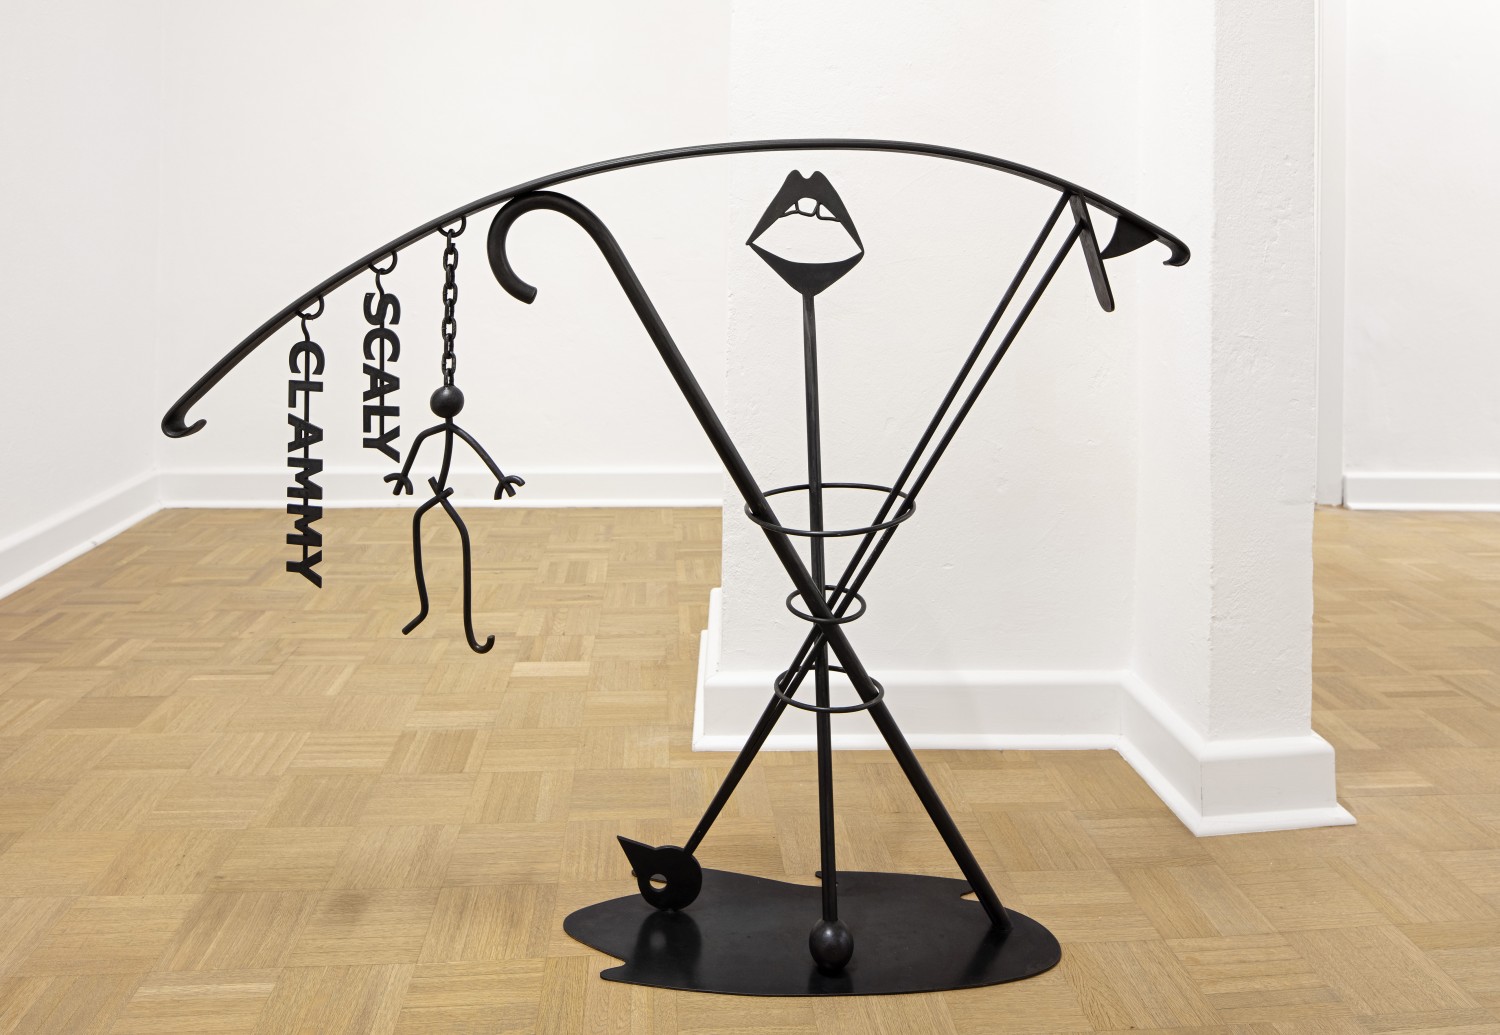 Ein Objekt der vierteiligen Werkreihe "Ballustrade" von Julie Béna aus dem Jahr 2020, das aus schwarz beschichtetem Stahl besteht und im Raum platziert ist. Den Objekten kommt Autonomie und Funktion gleichermaßen zu, sie sind Bild und tatsächlich Balustrade zugleich.